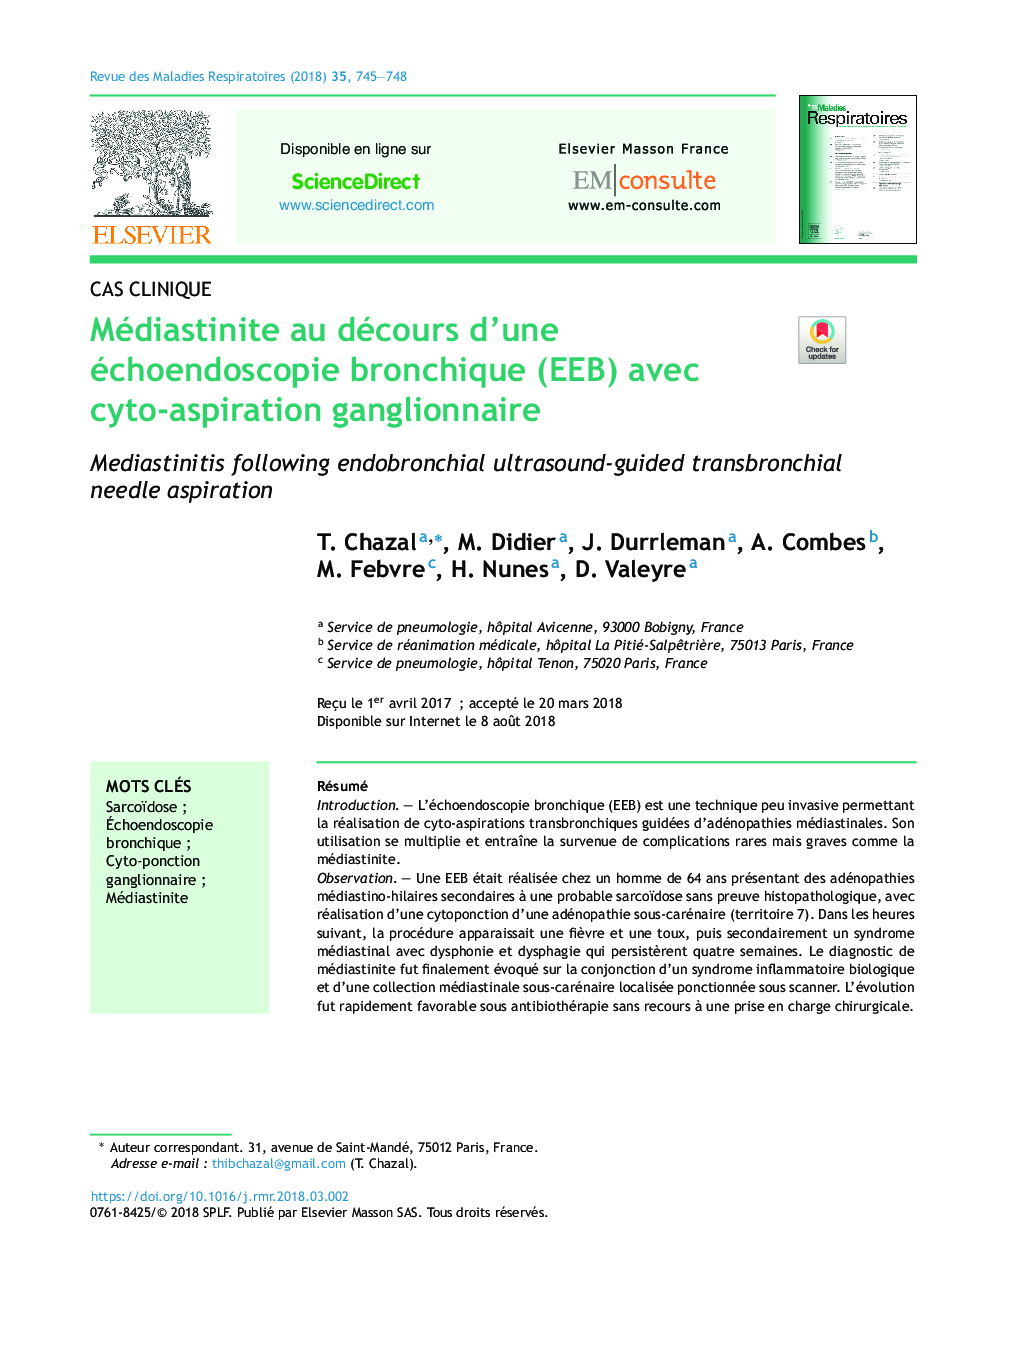 Médiastinite au décours d'une échoendoscopie bronchique (EEB) avec cyto-aspiration ganglionnaire